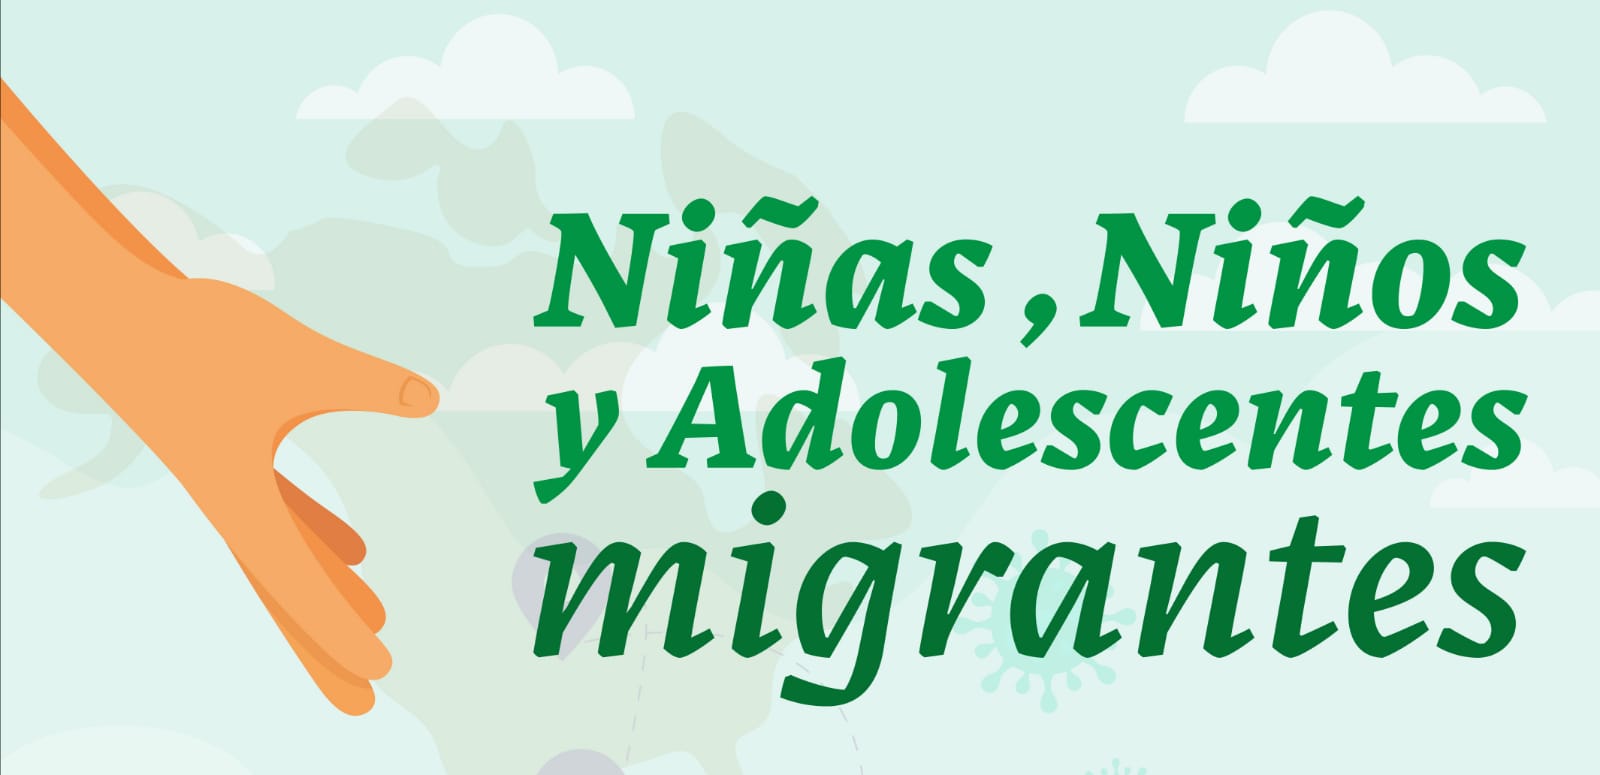 Niñas, Niños y Adolescentes migrantes 